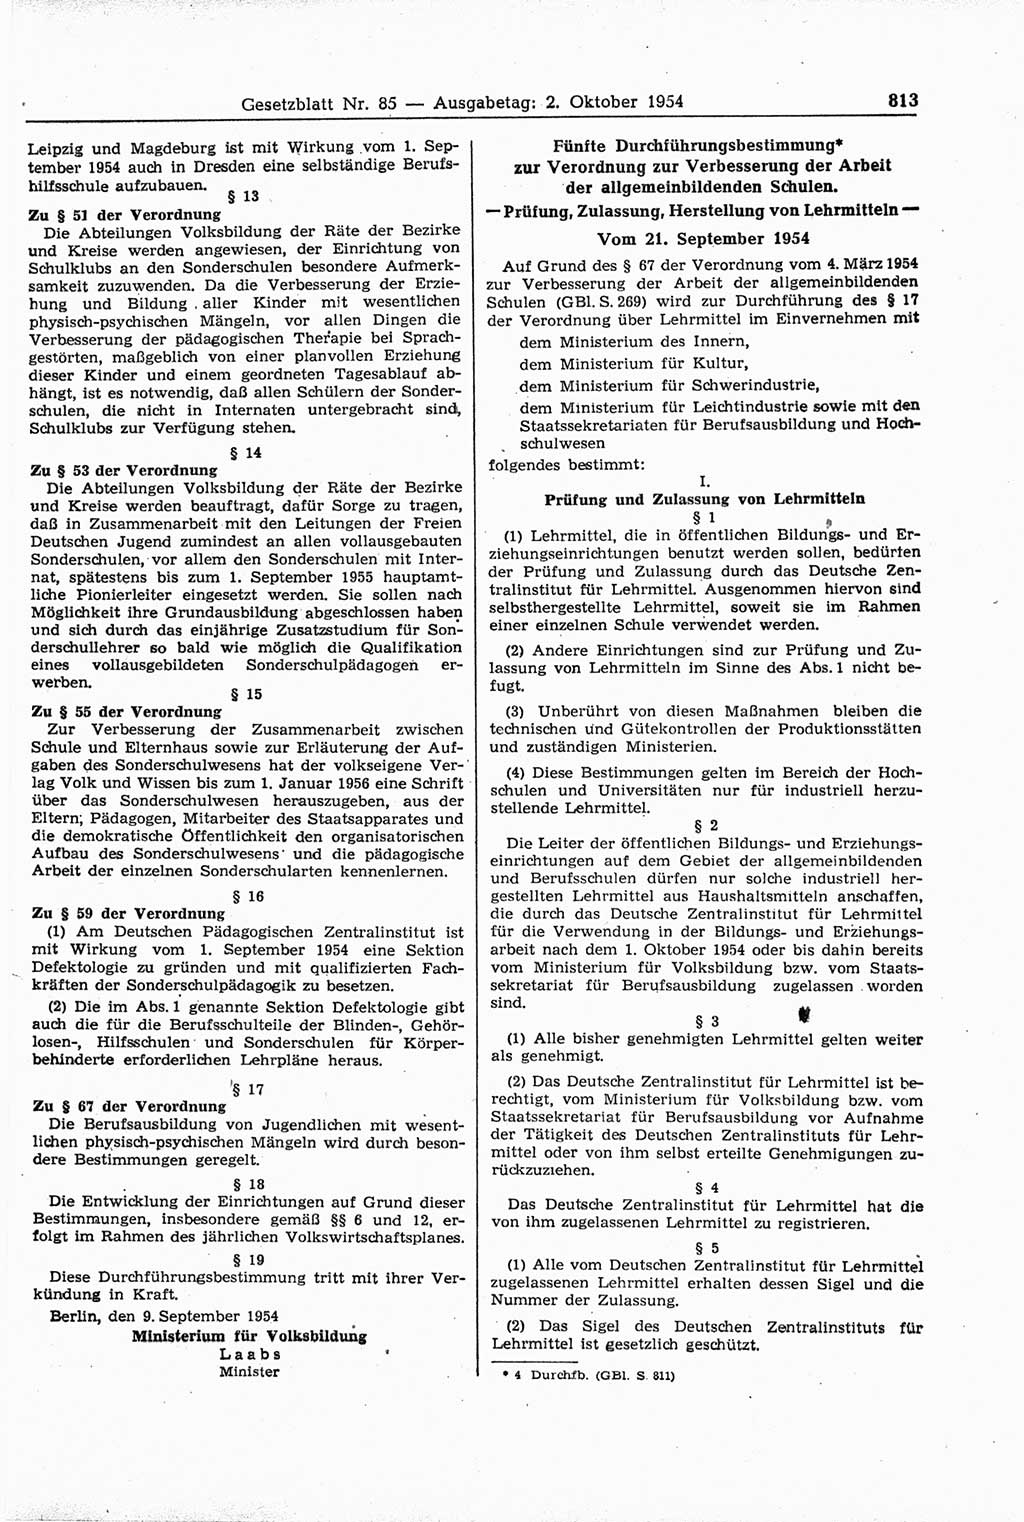 Gesetzblatt (GBl.) der Deutschen Demokratischen Republik (DDR) 1954, Seite 813 (GBl. DDR 1954, S. 813)